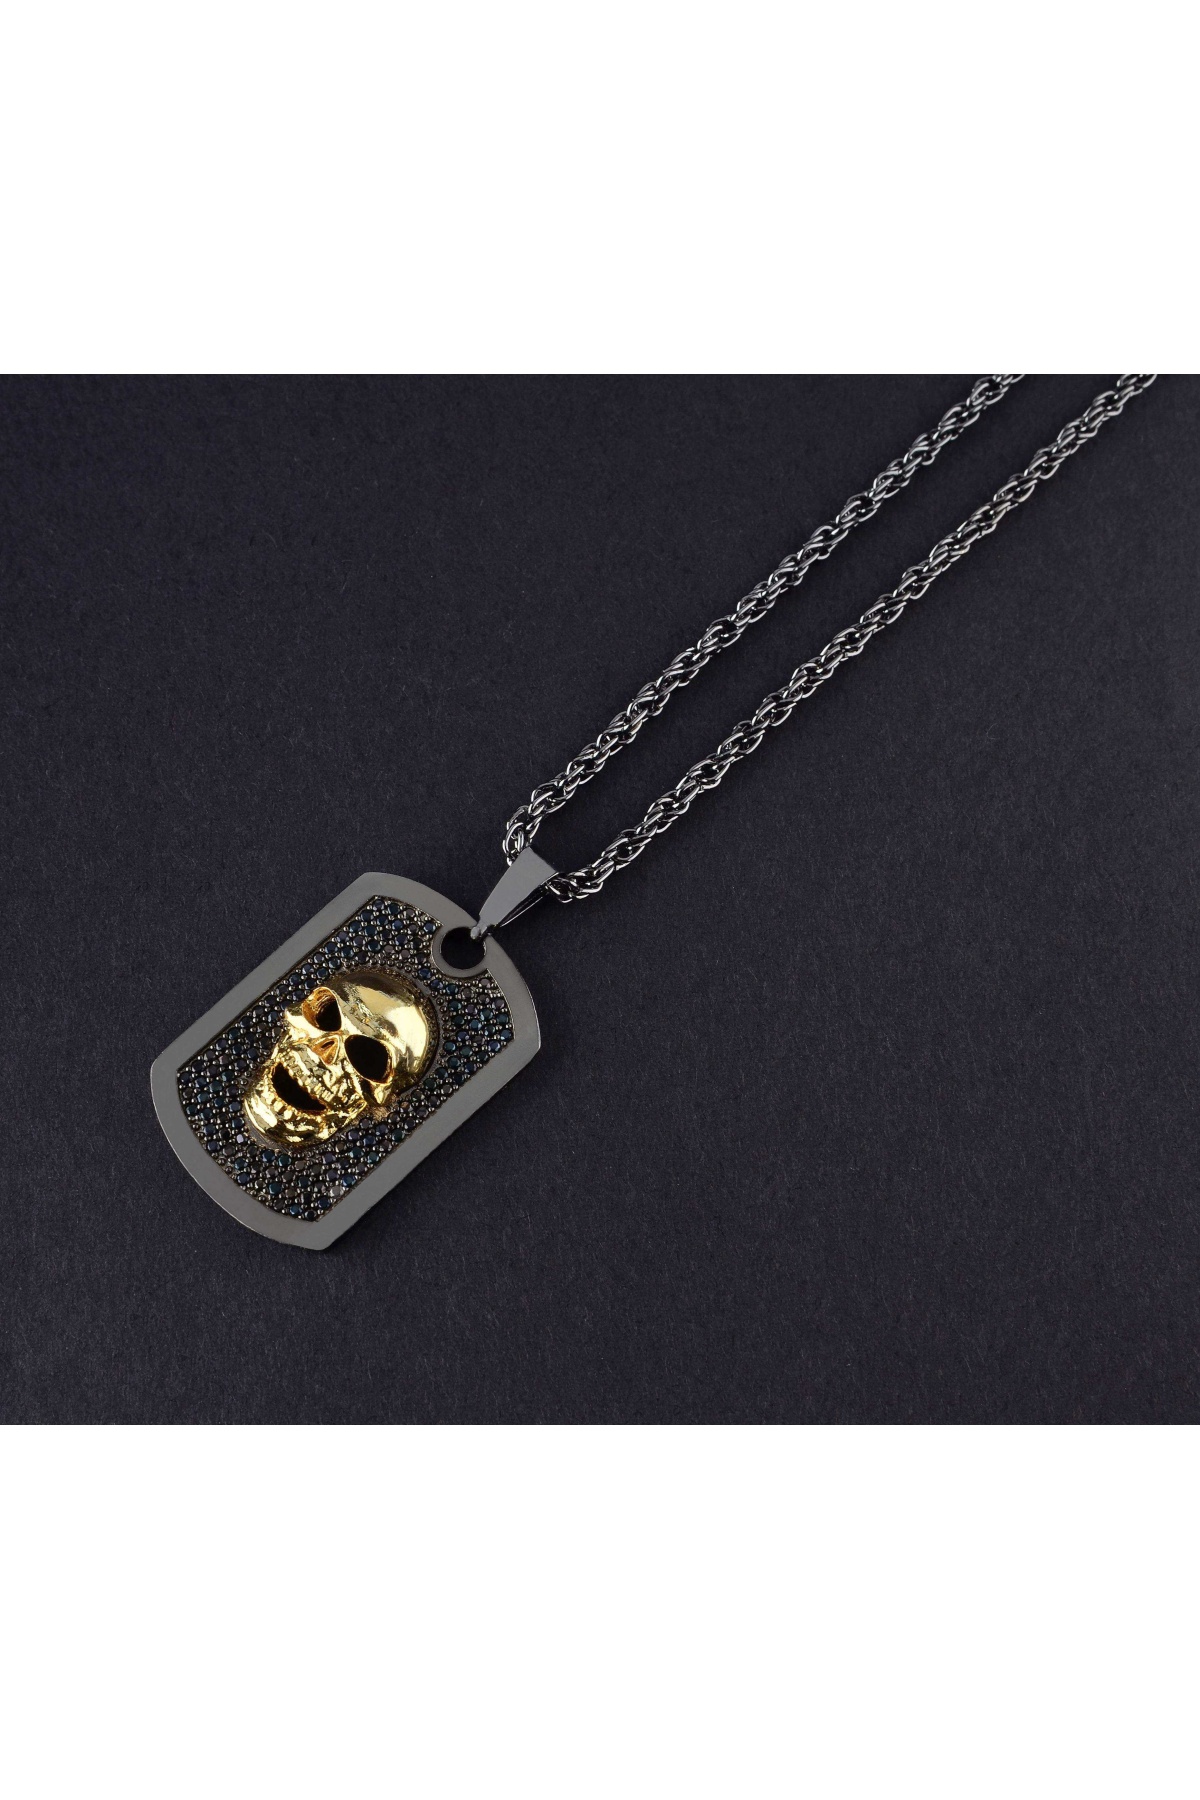 ZCN Gold Skull Black Necklace - ZCN0005